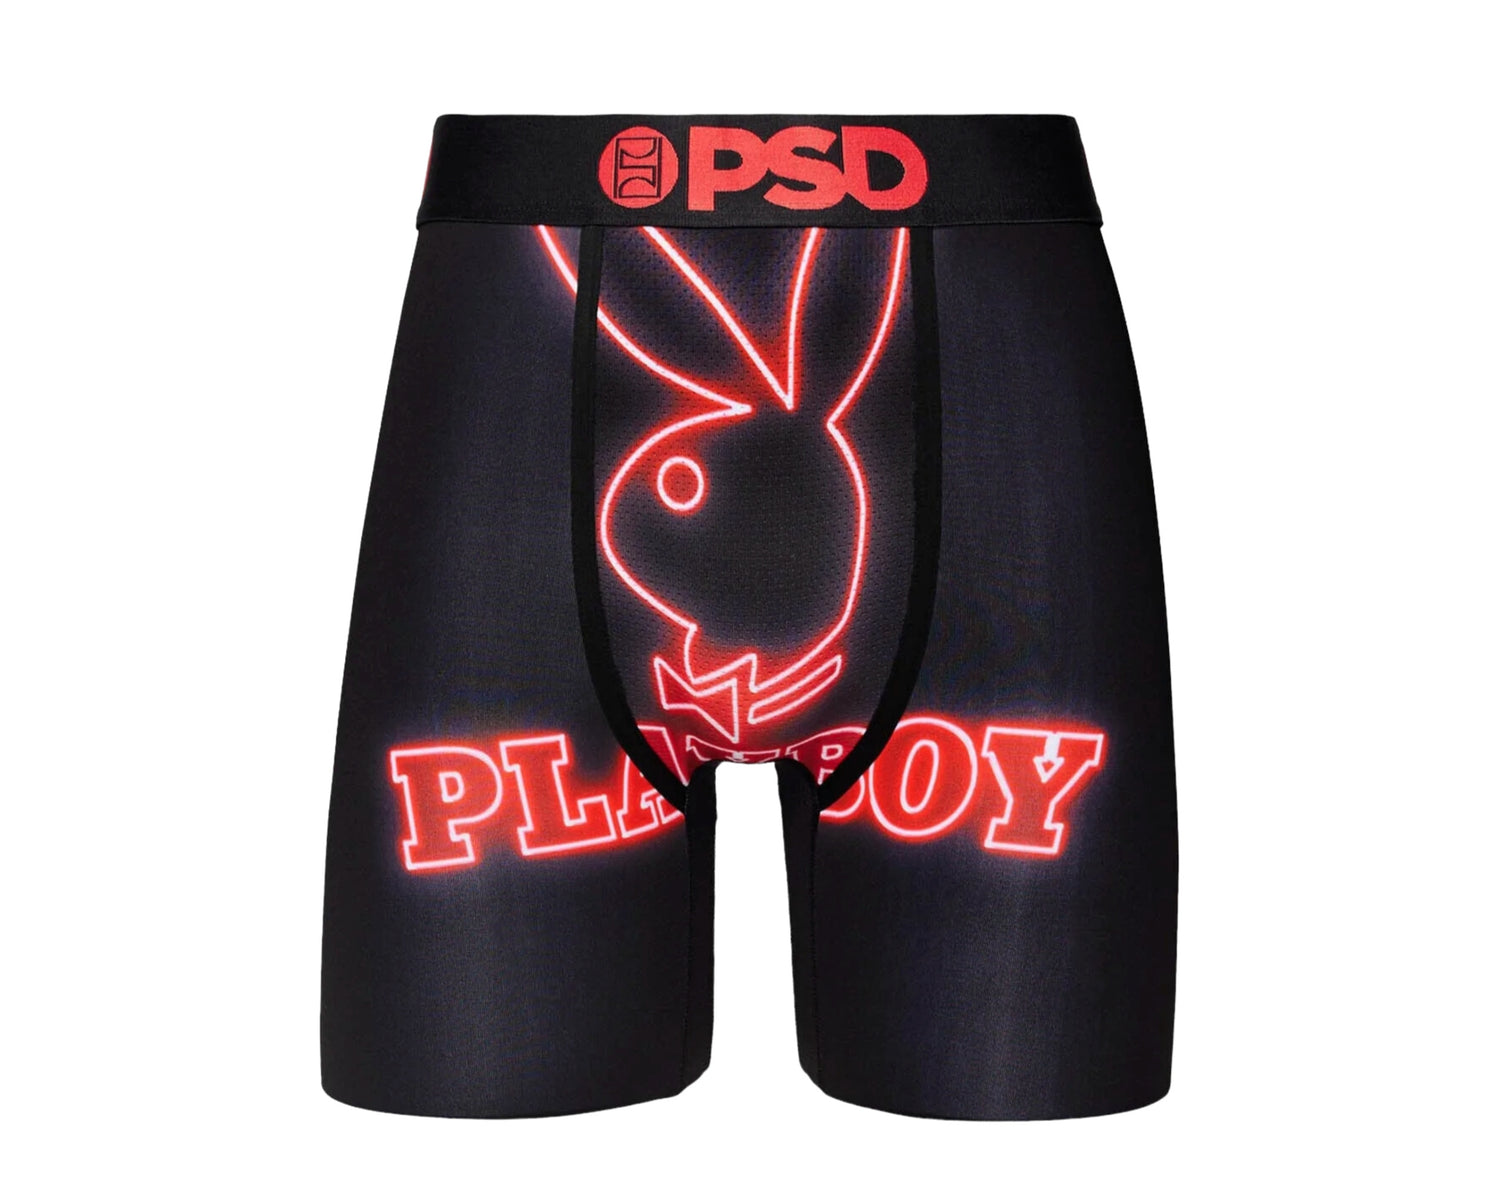 PSD x Playboy - RHD Neon Briefs Men's Underwear